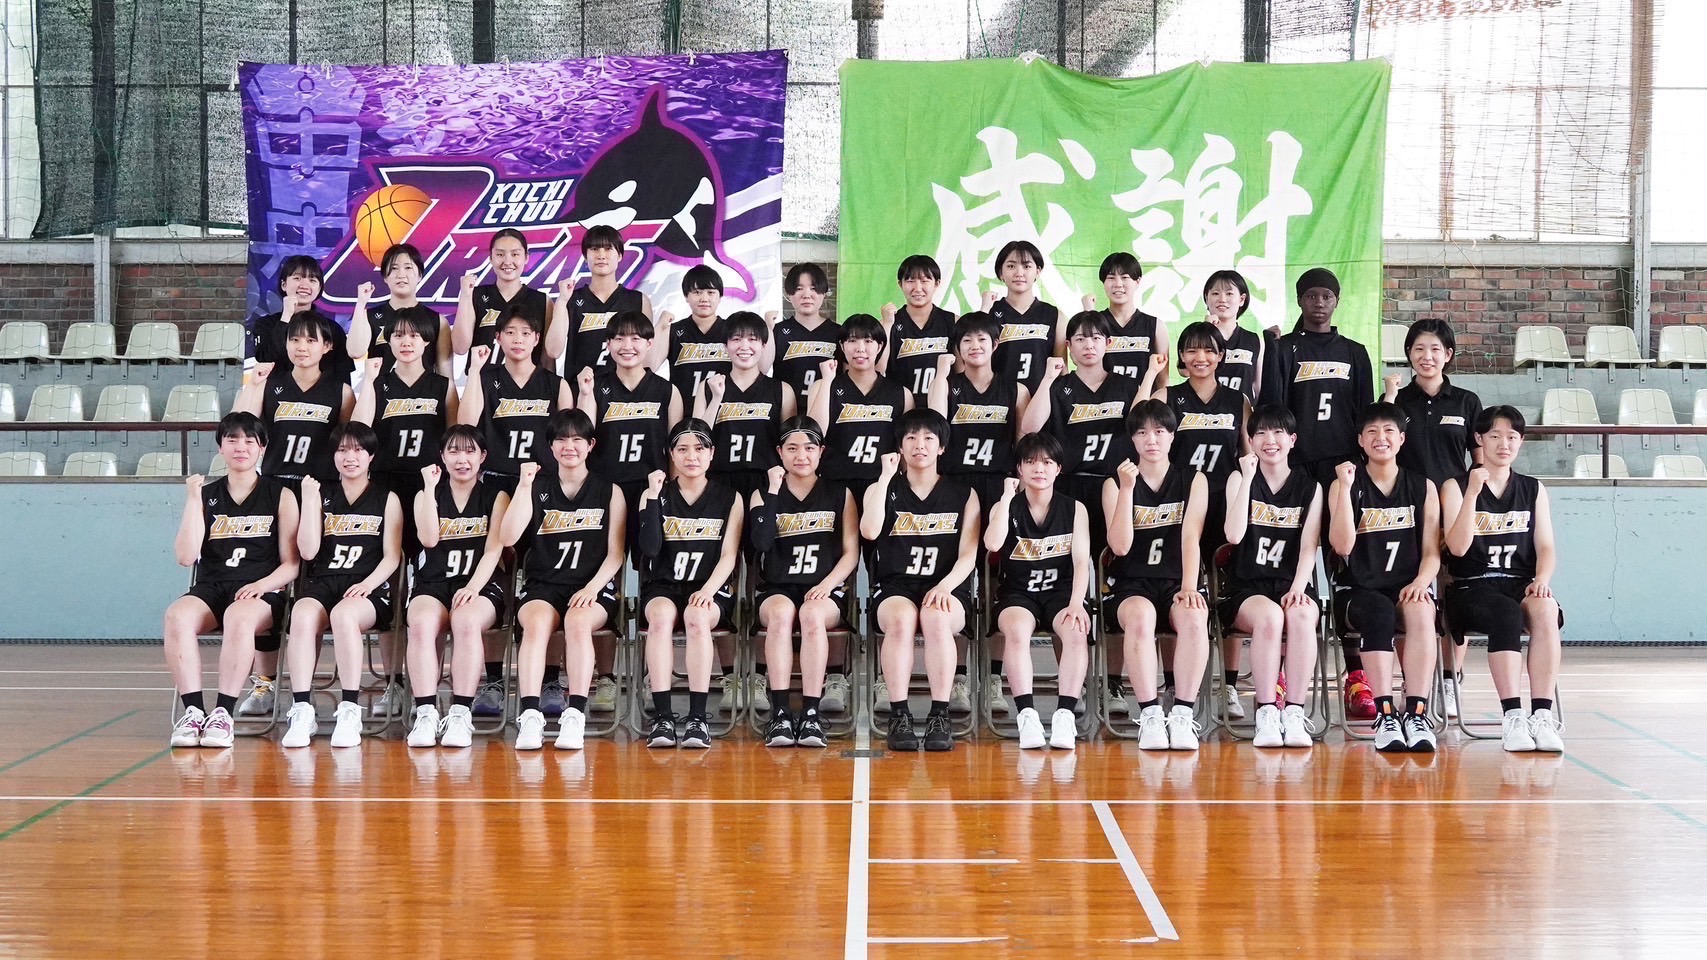 全明星vs臺北鯨華、日本高校籃球隊交流 排球、籃球接力登場促進學子交流、打造健康舞台